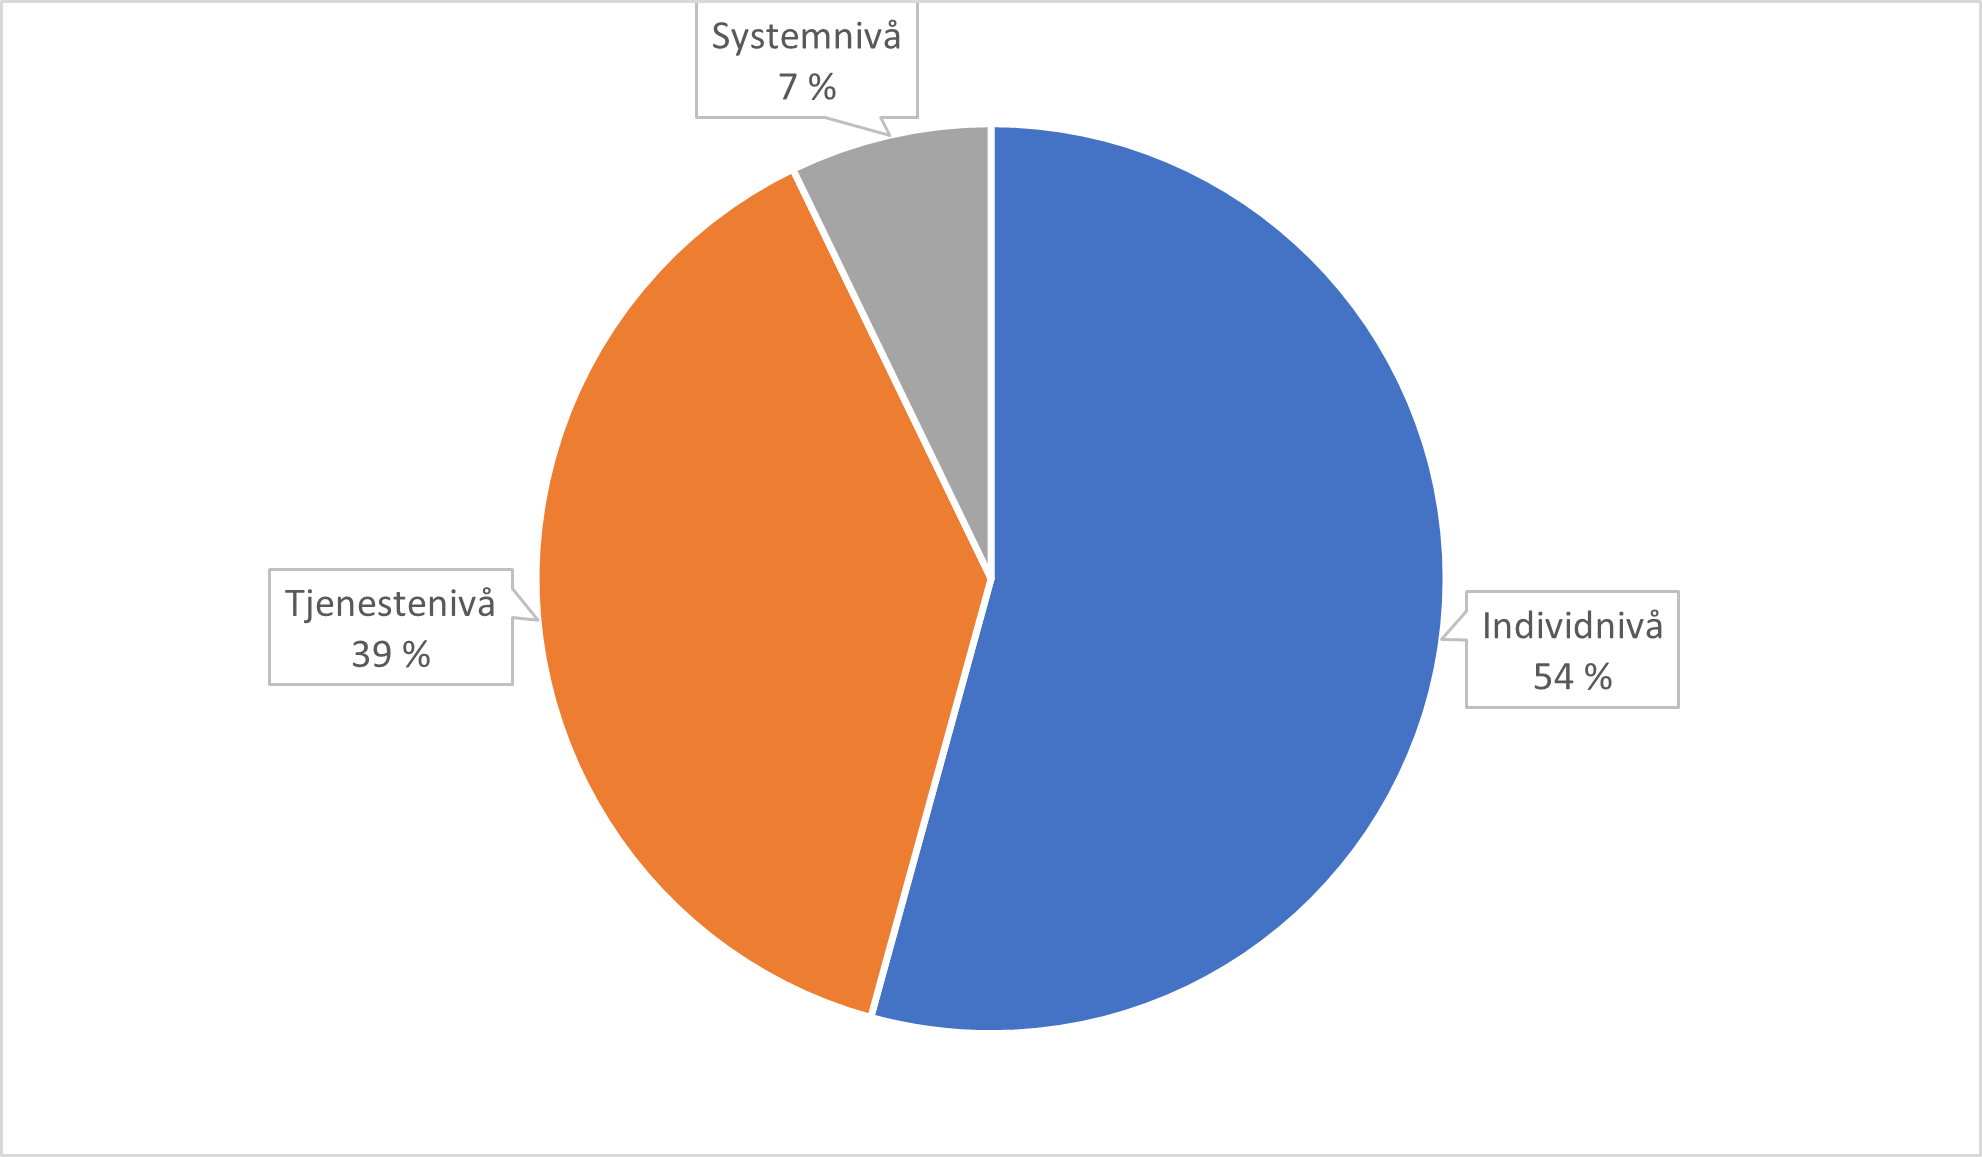 Figuren viser en oversikt over fordeling av artikler på engelsk språk, innenfor en norsk kontekst, som omhandler individnivå (54%), tjenestenivå (39 %) og systemnivå (7%).